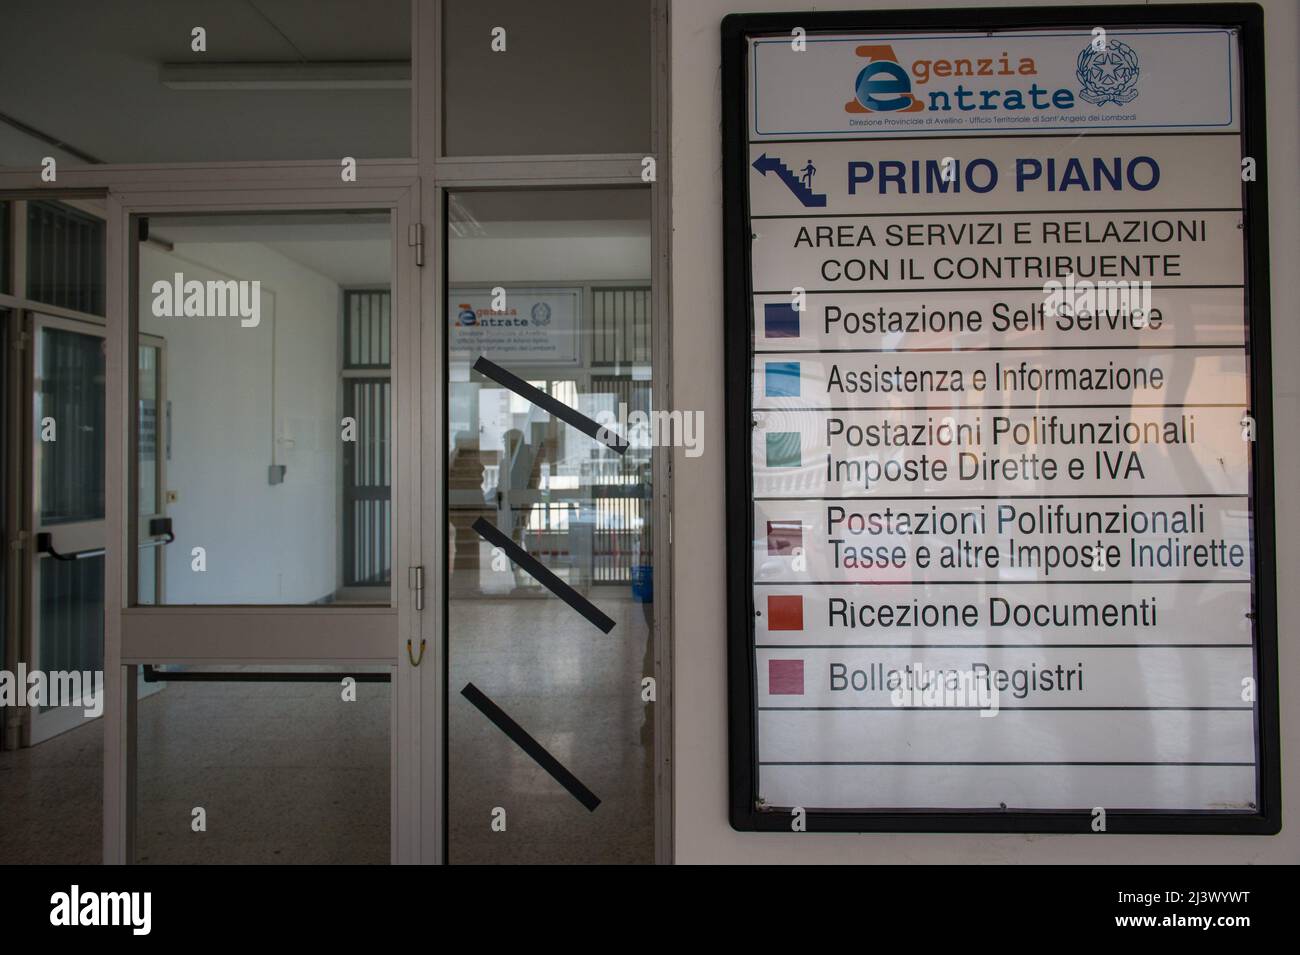 Sant'Angelo dei Lombardi, Avellino, Italie 11/02/2015: Agence delle Entrate fermée pour examen des dépenses. ©Andrea Sabbadini Banque D'Images